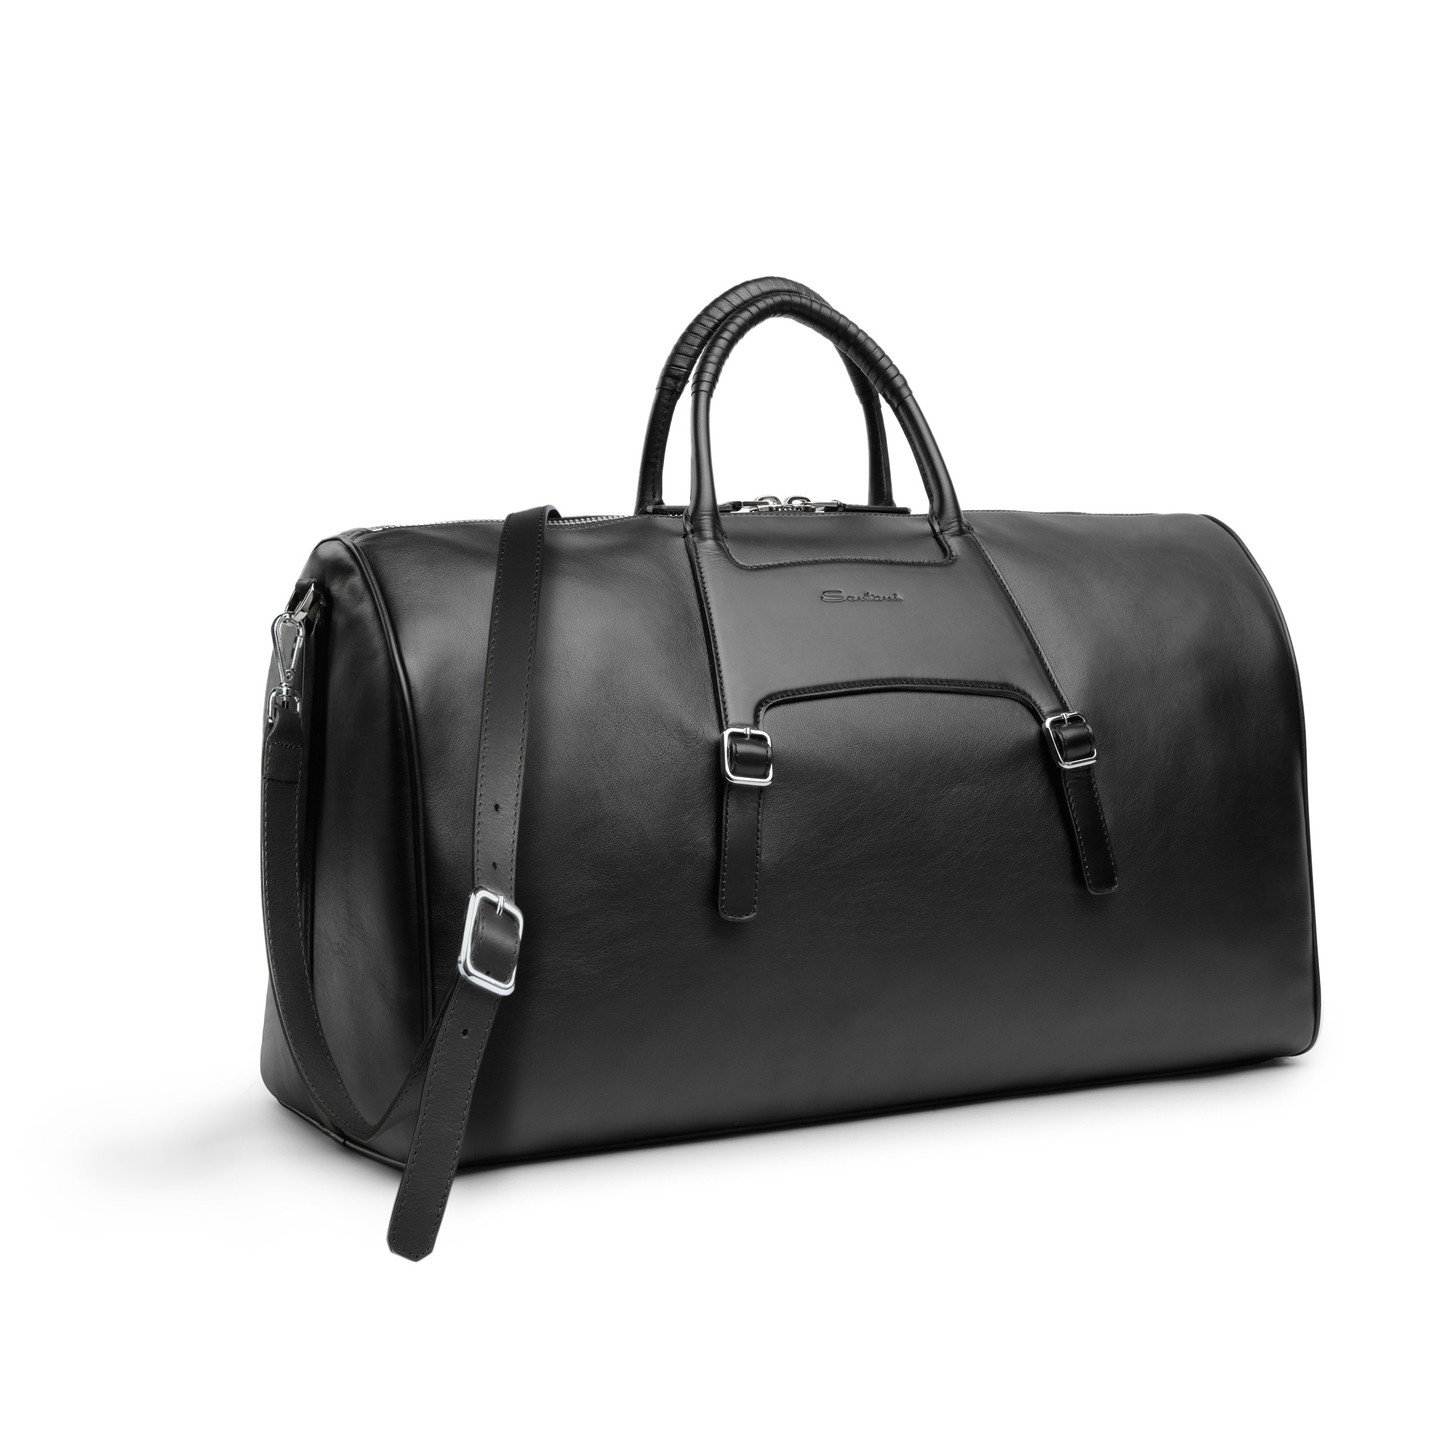 Black leather weekend bag - 5